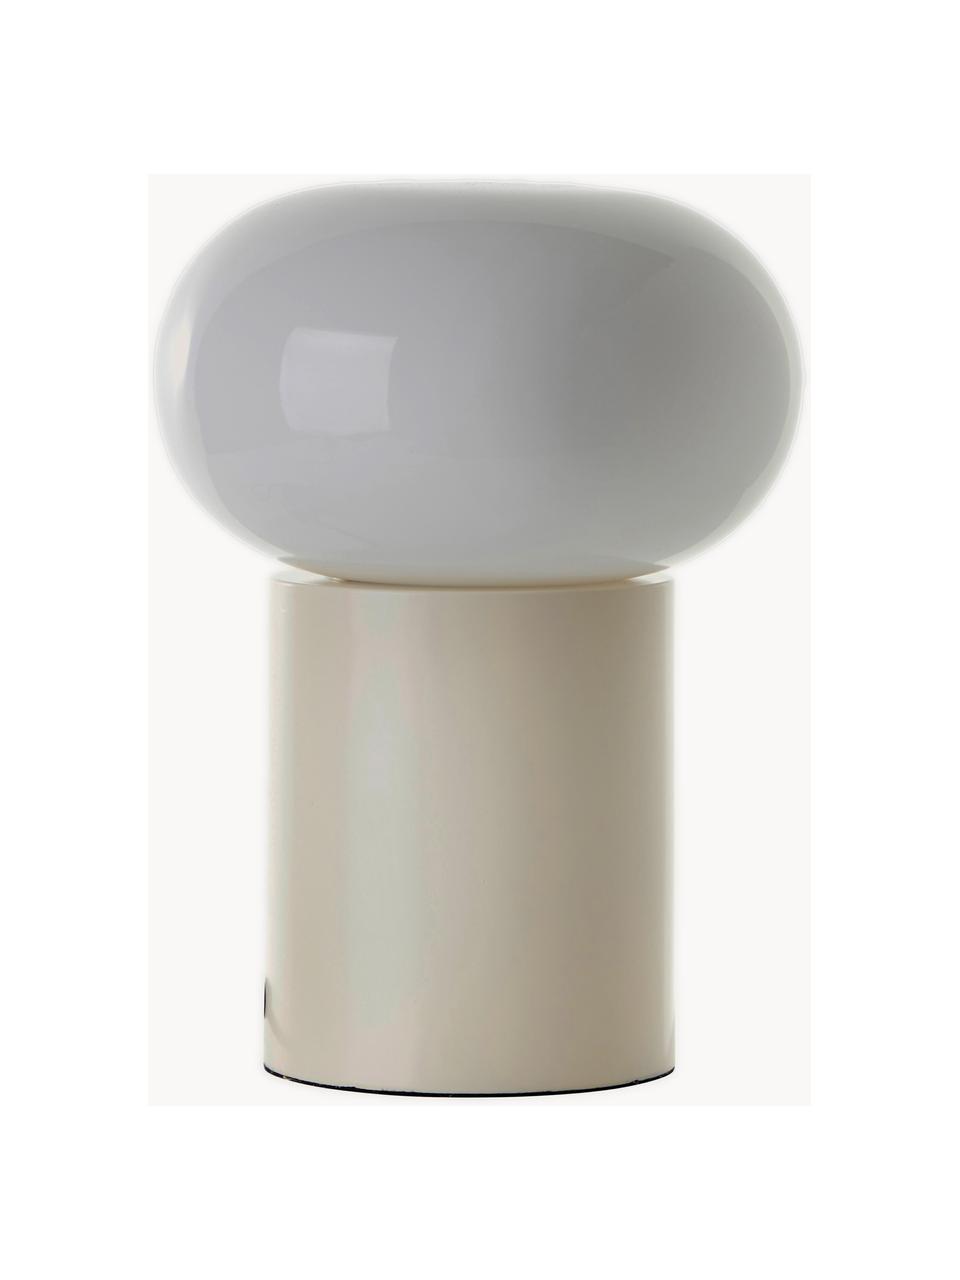 Kleine Tischlampe Deany, Lampenschirm: Glas, Lampenfuß: Metall, beschichtet, Hellbeige, Weiß, Ø 20 x H 27 cm